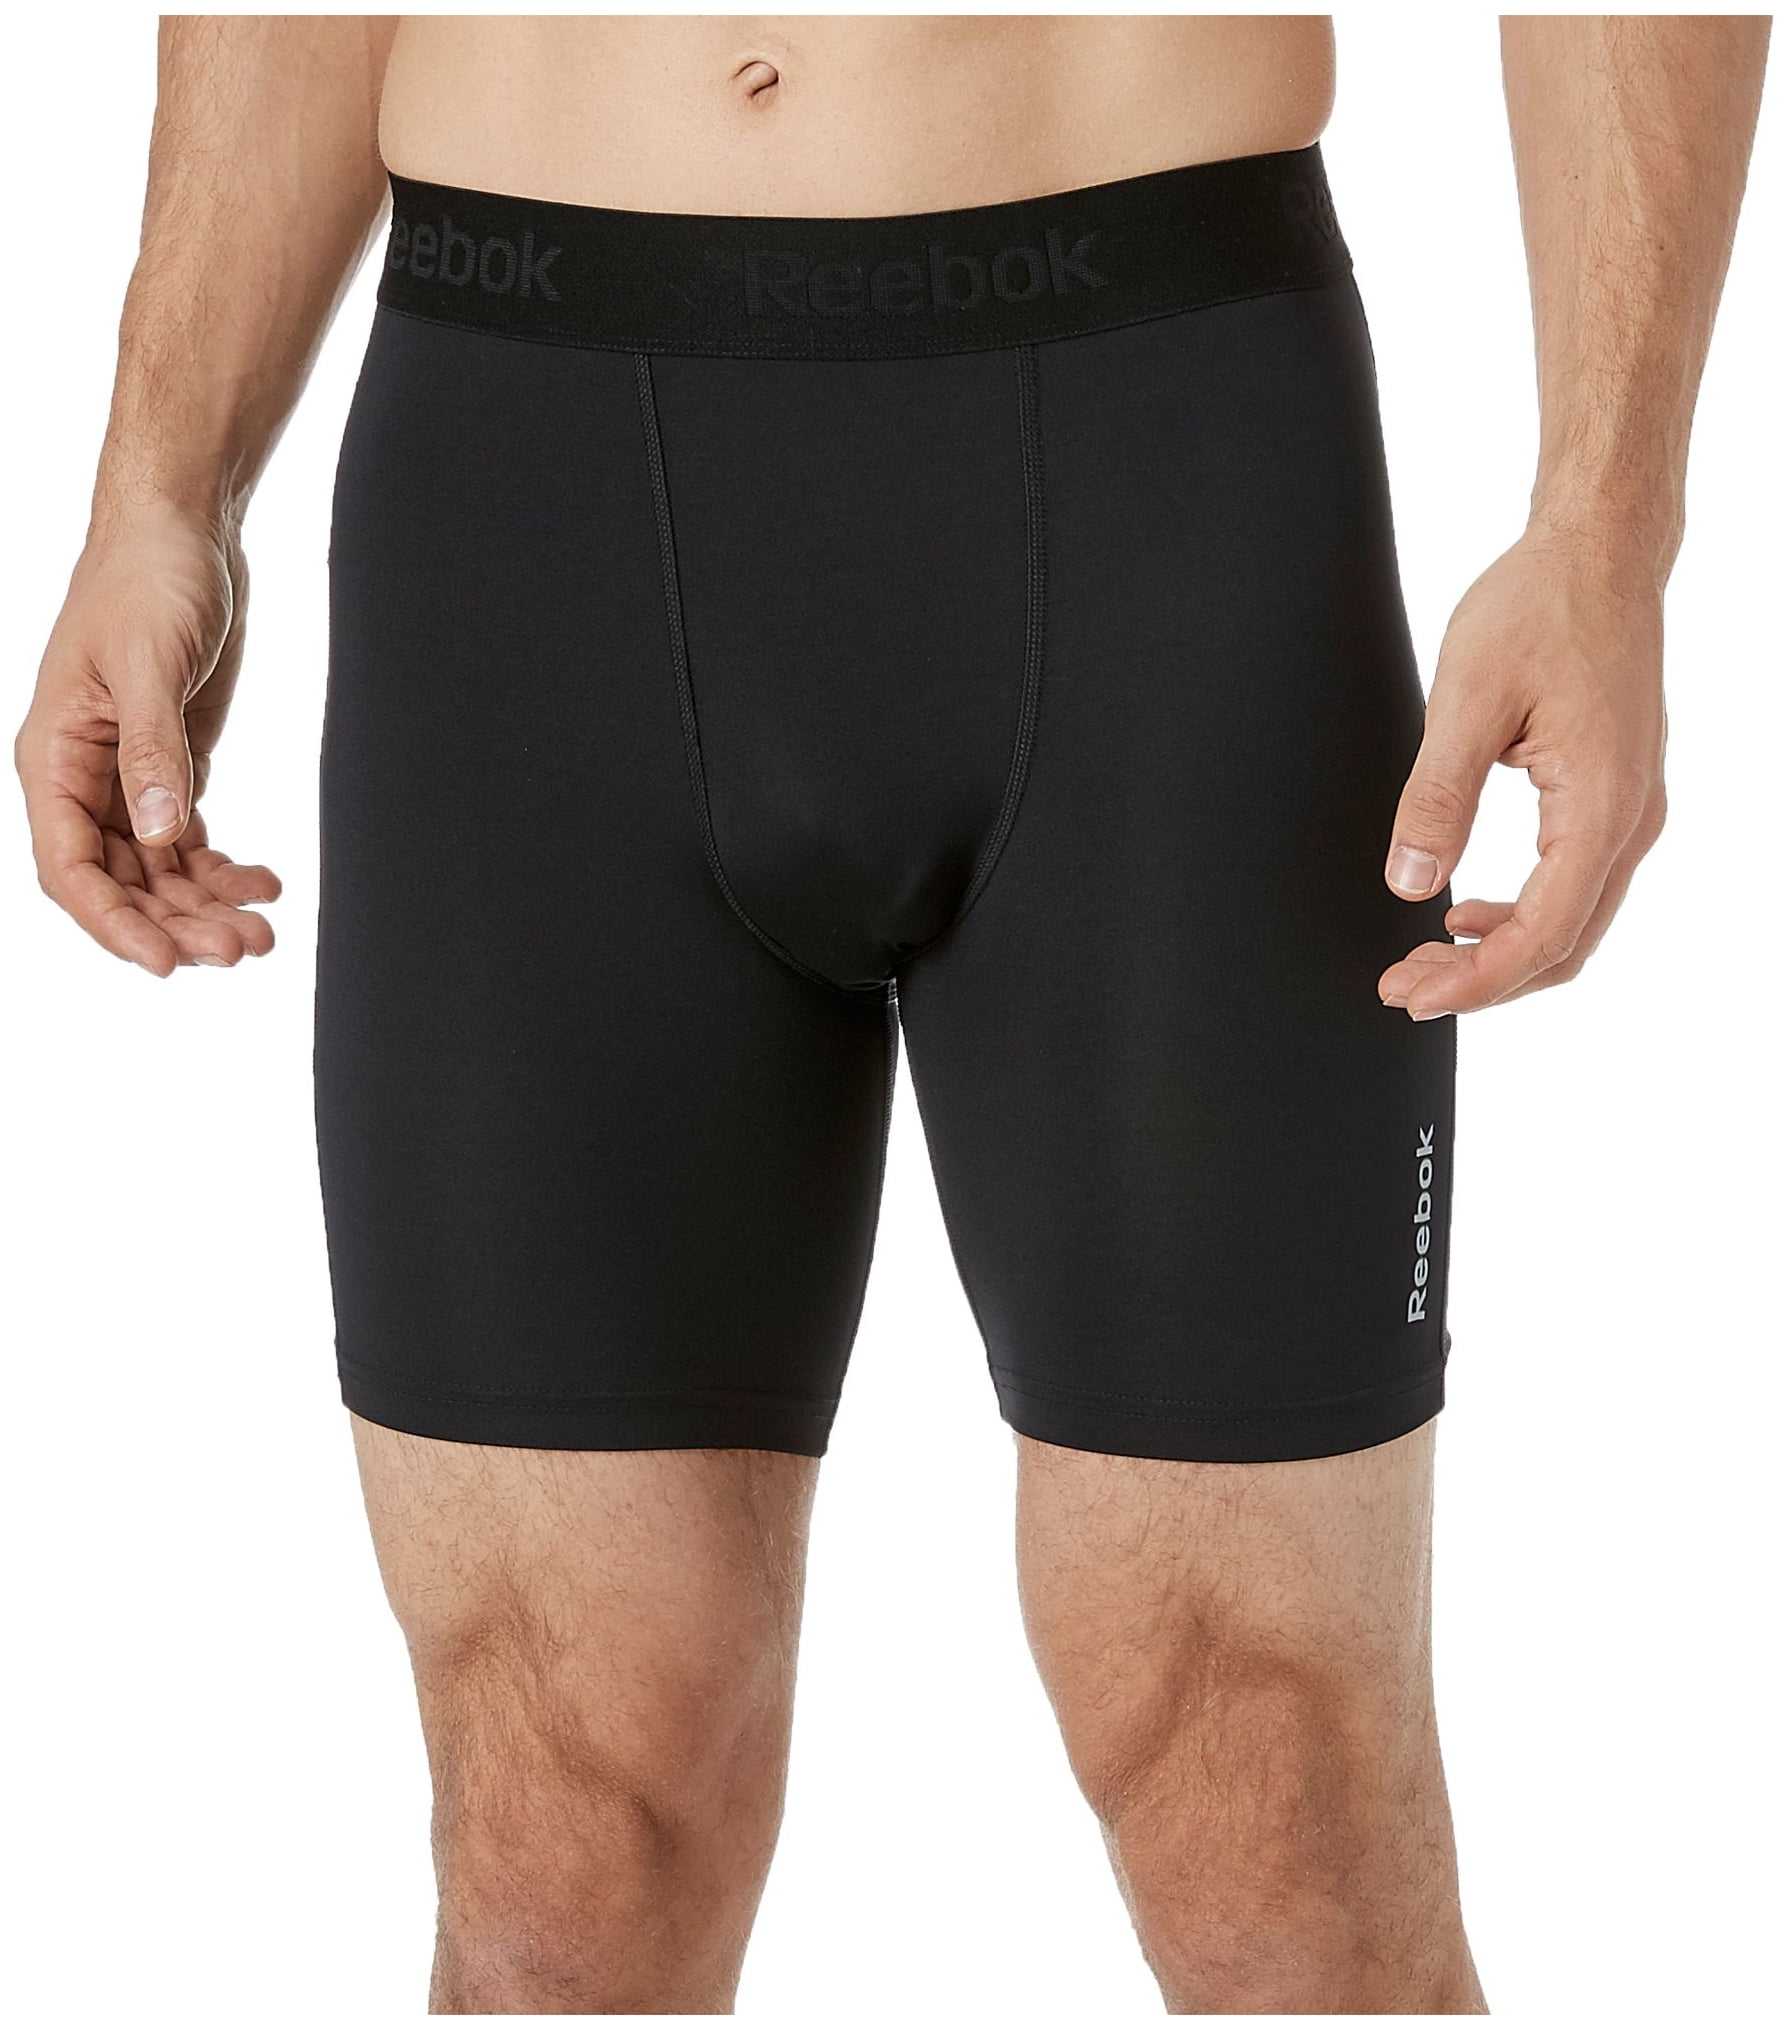 reebok men's compression shorts